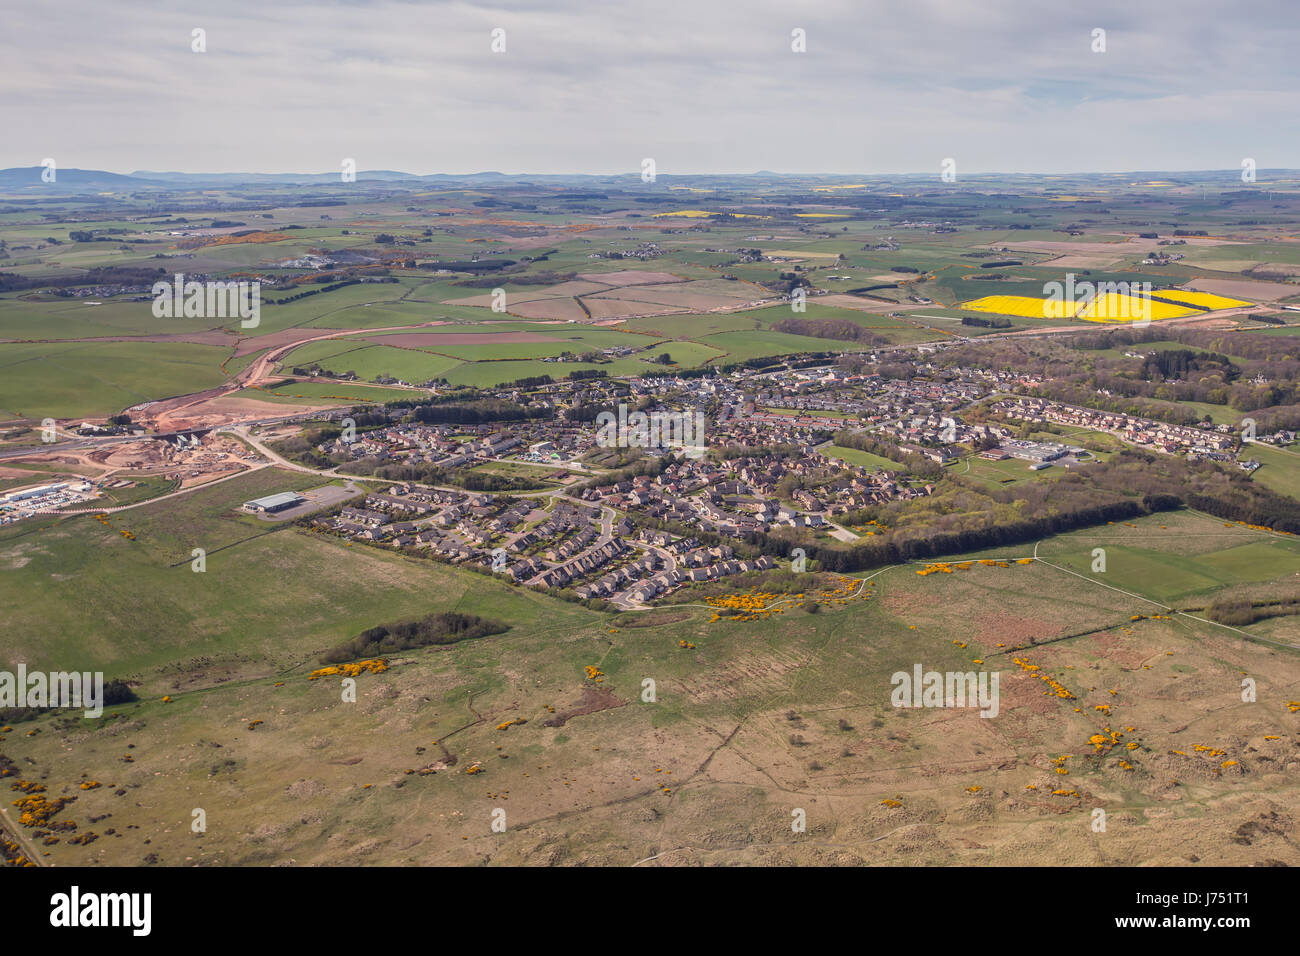 Fotografía aérea de la ciudad de Balmedie, cerca de la ciudad de Aberdeen en el noreste de Escocia, Reino Unido Foto de stock